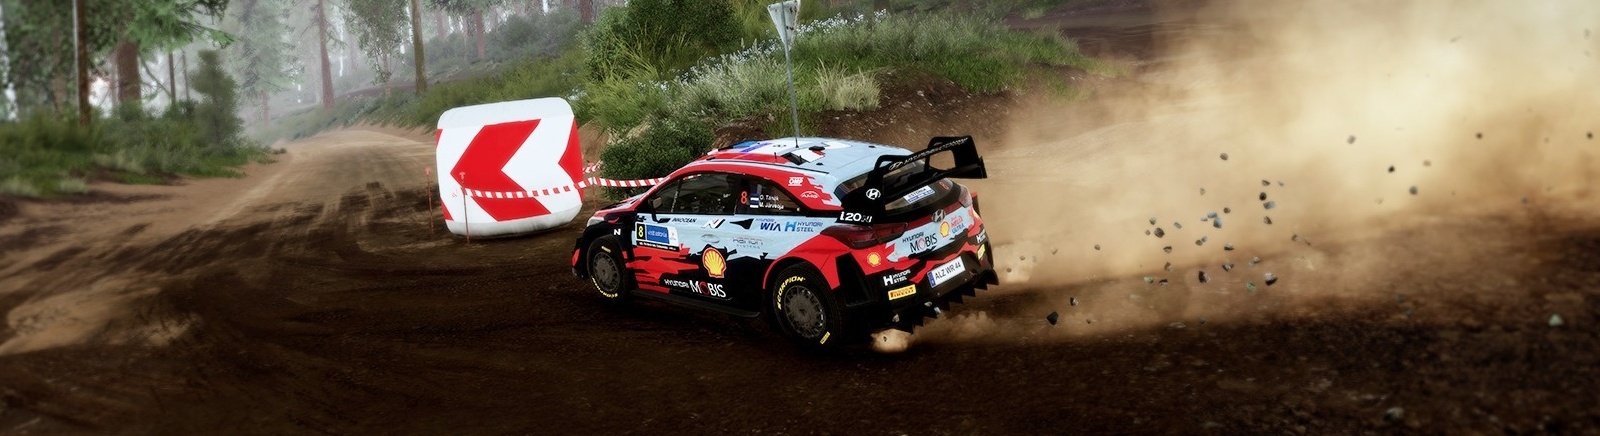 Дата выхода WRC 10  на PC, PS5 и Xbox Series X/S в России и во всем мире